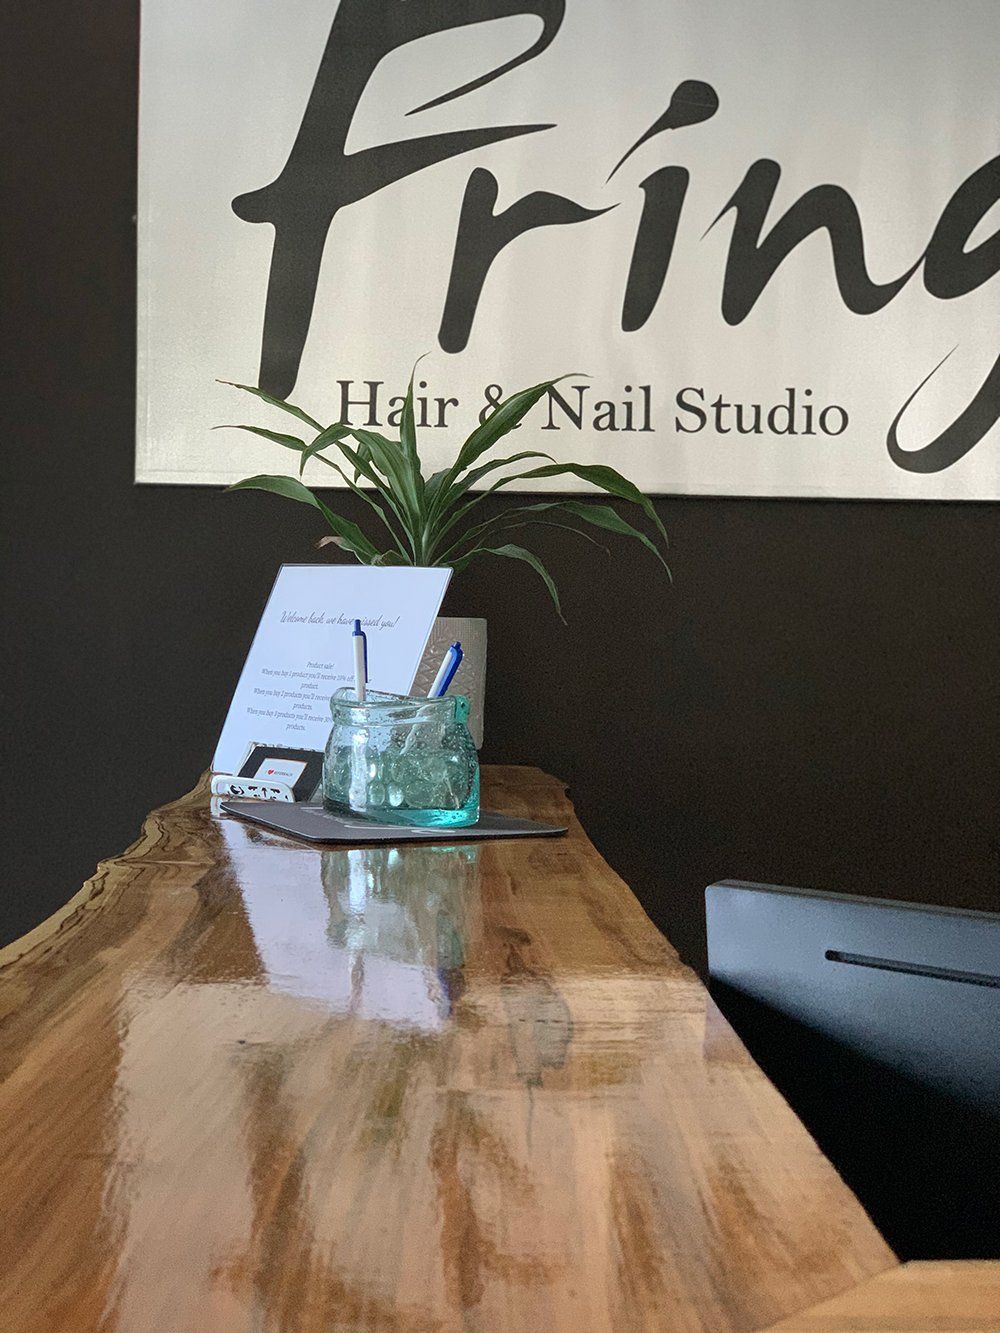 Fringe Hair & Nail Studio